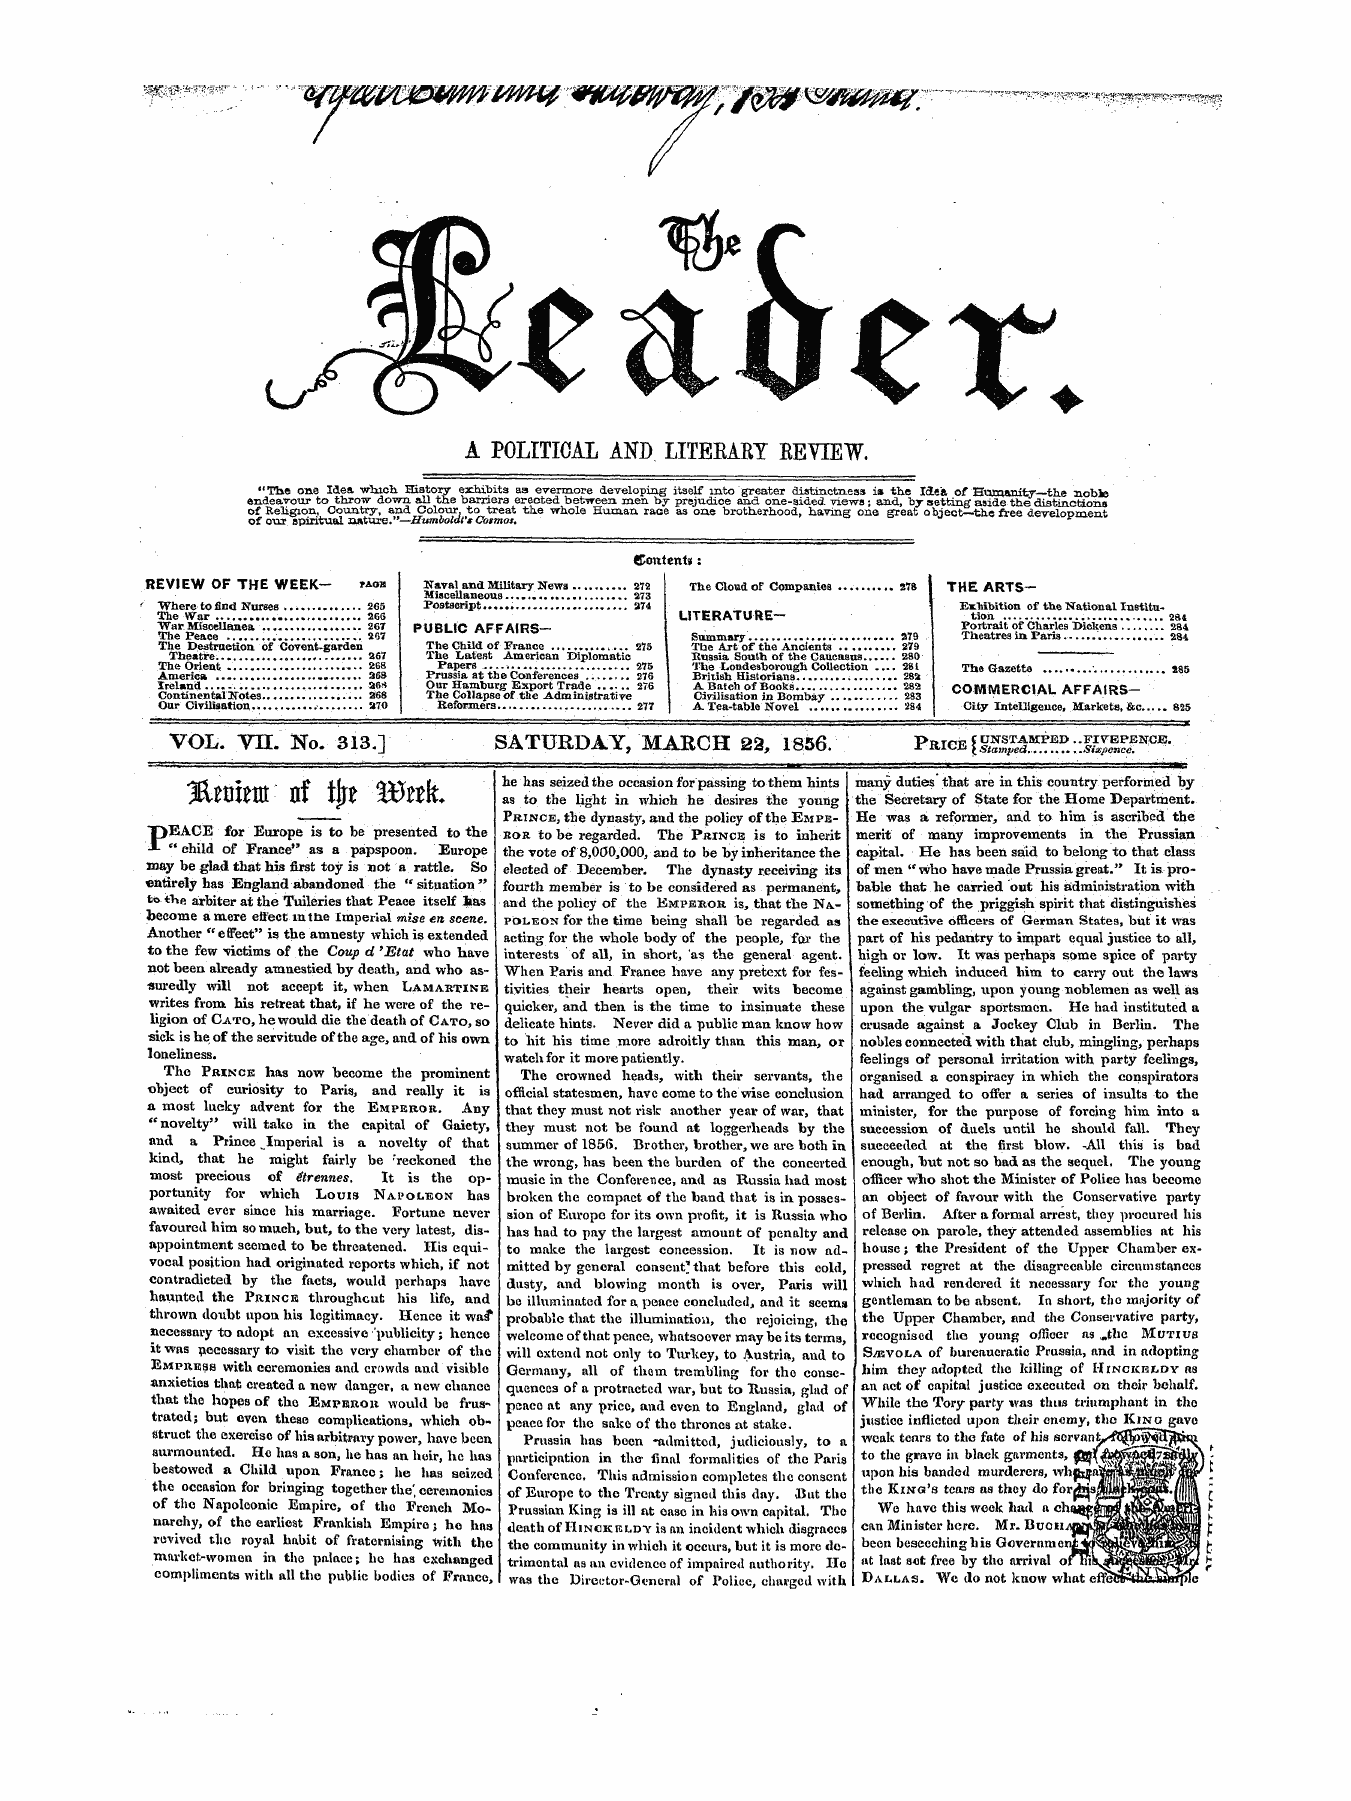 Leader (1850-1860): jS F Y, 1st edition - J&Raent Nf Tfre Wnk.